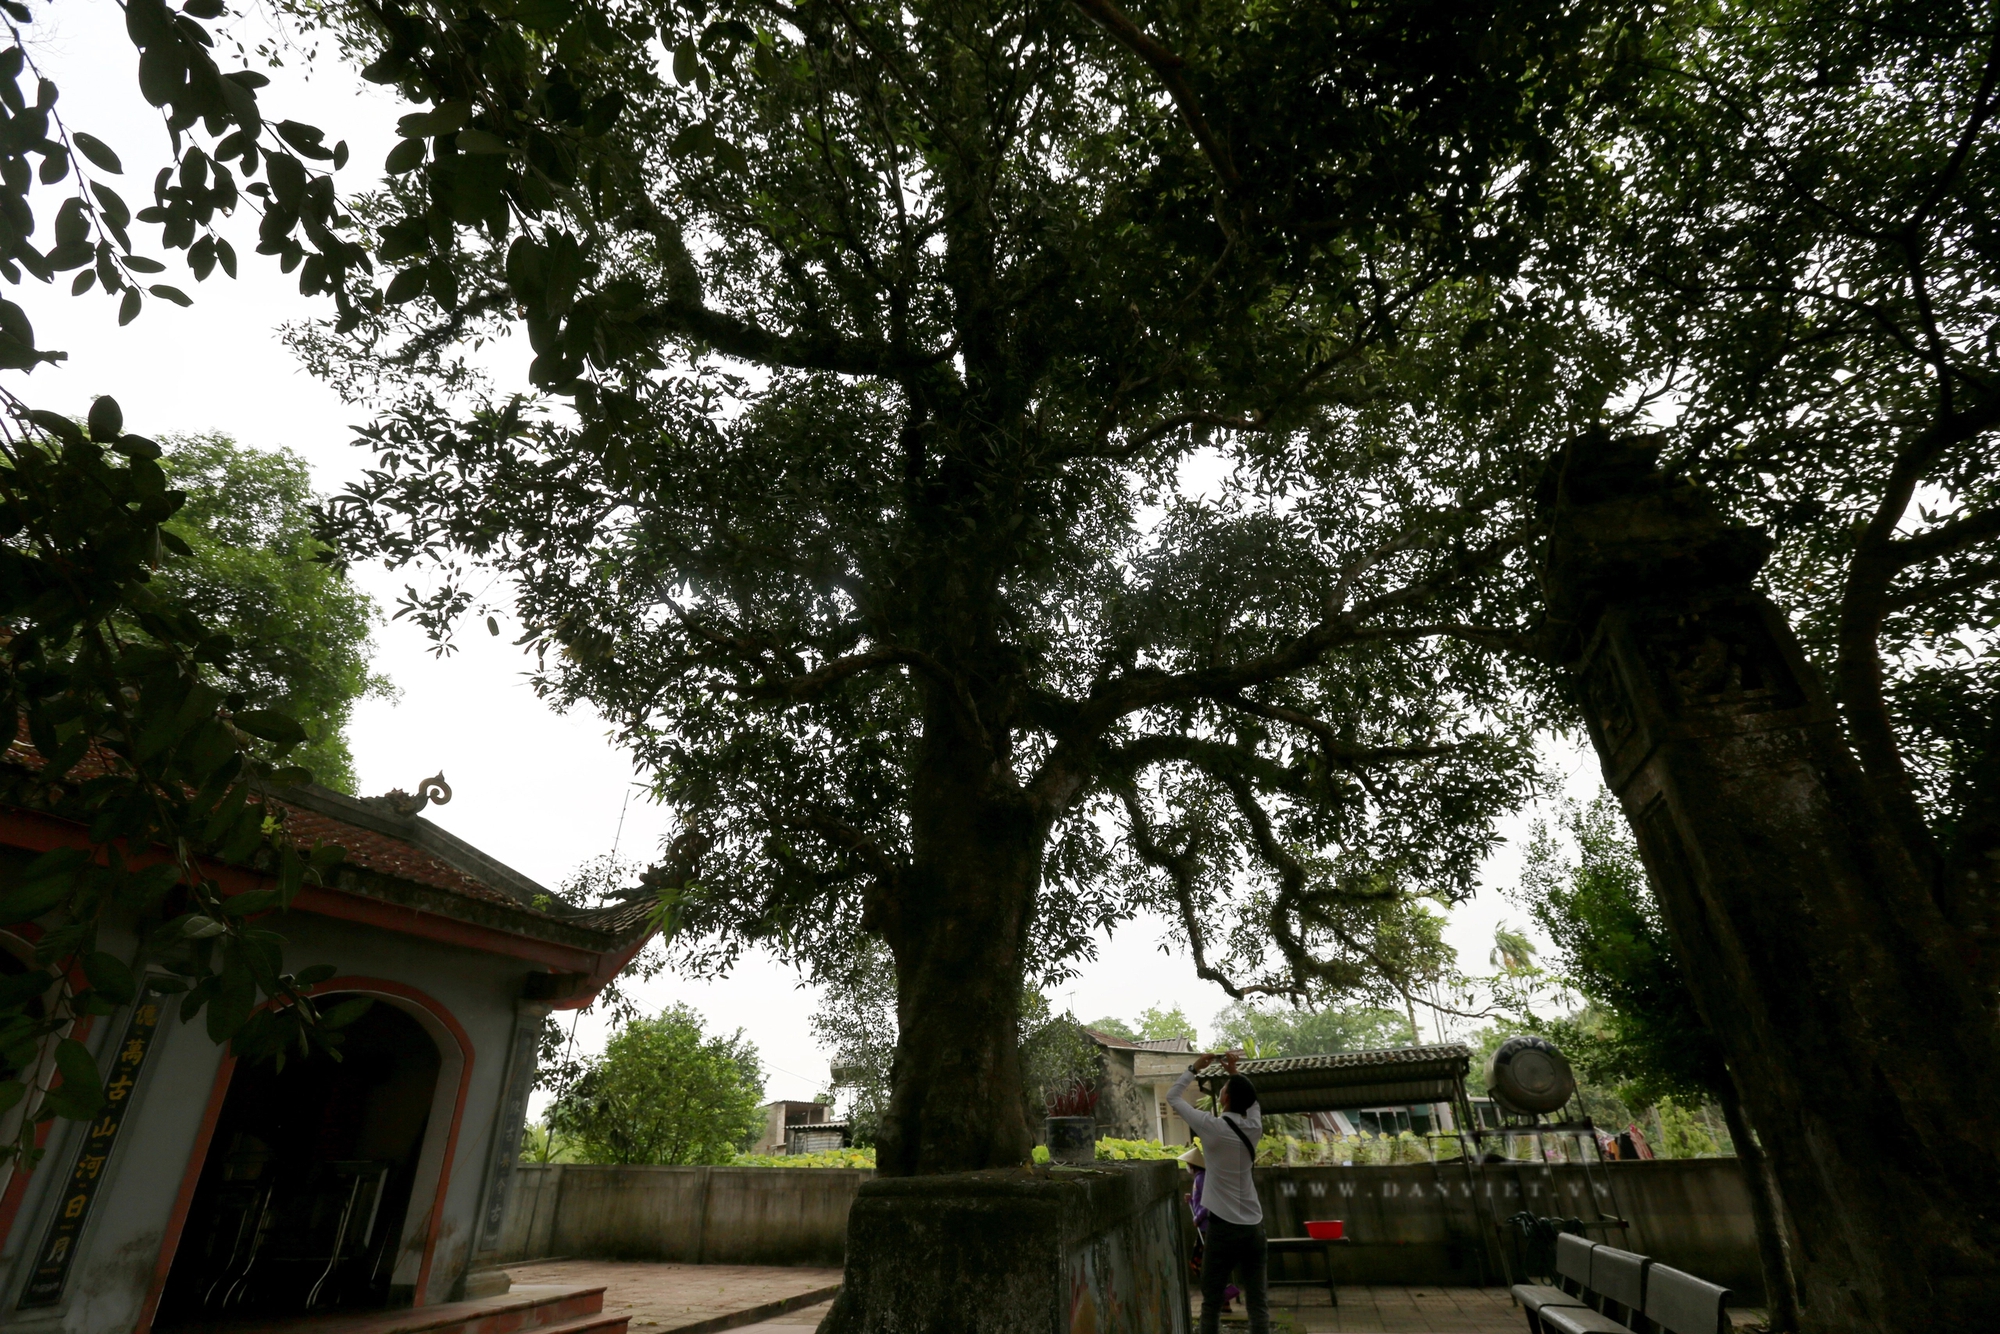 Ở một thị trấn của Hà Tĩnh có 2 cây cổ thụ 600 tuổi "trấn" cửa đền Cương Quốc Công Nguyễn Xí- Ảnh 11.